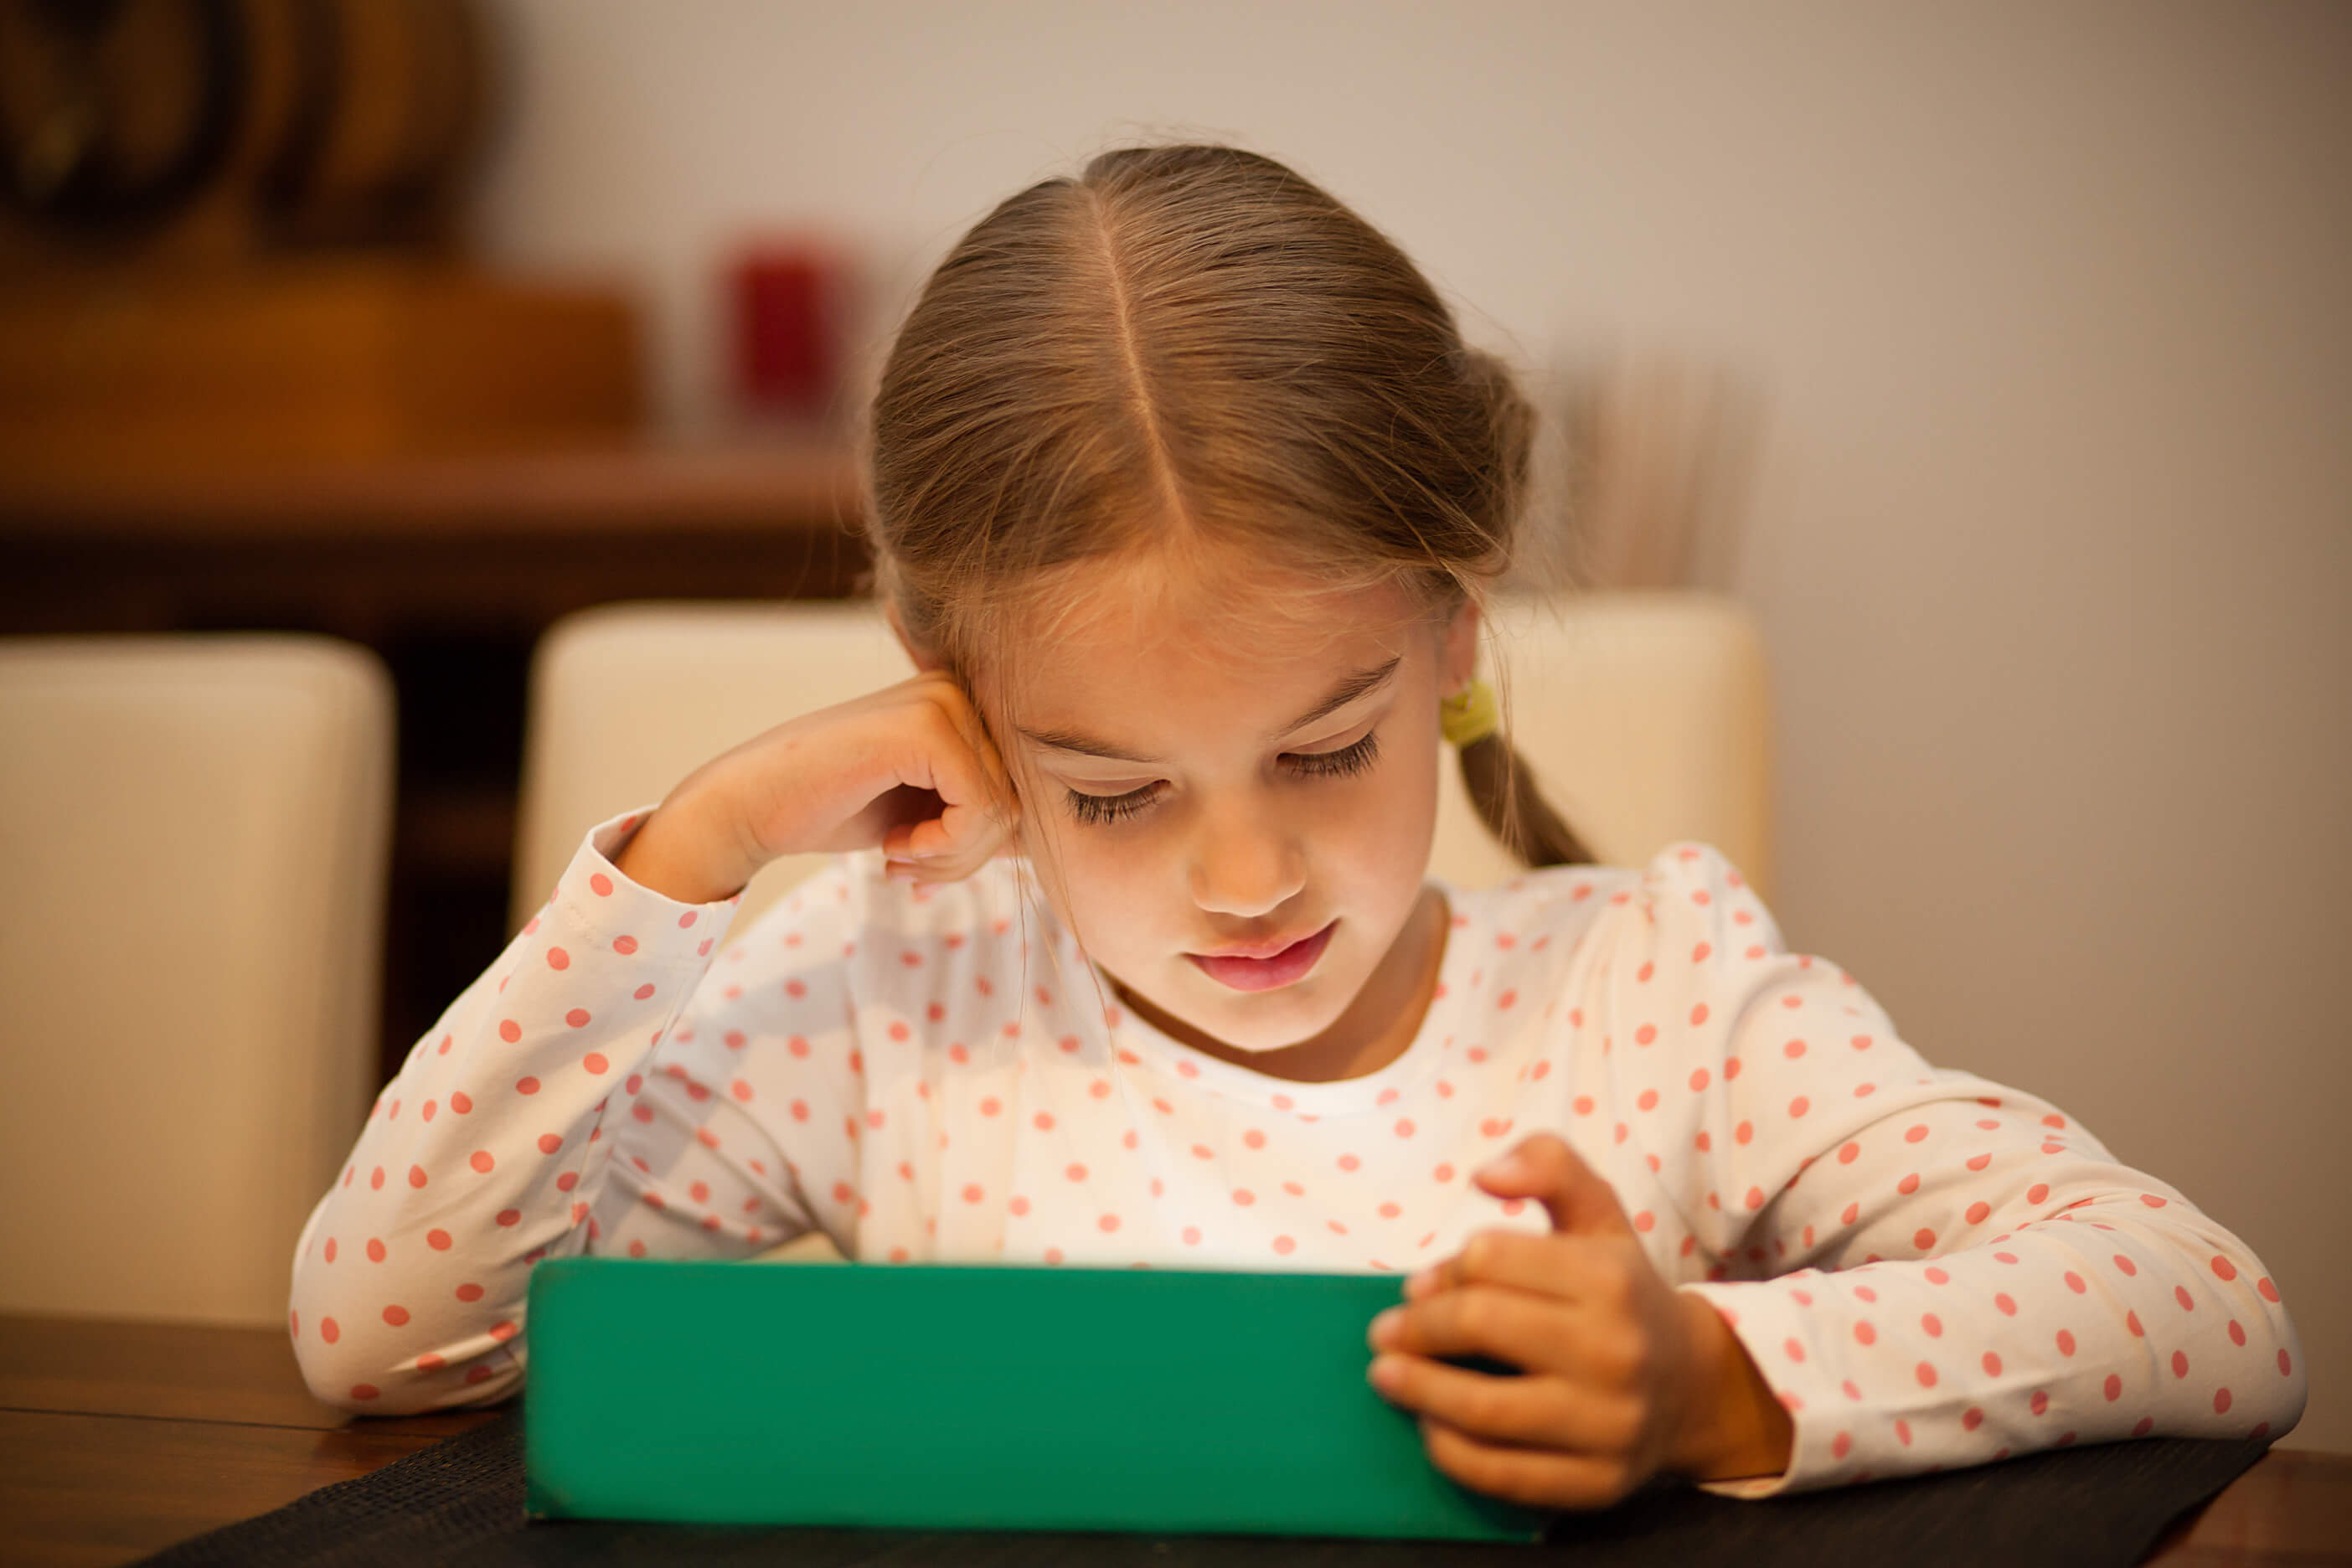 Игнорировать нельзя использовать: как воспитывать детей в цифровую эпоху